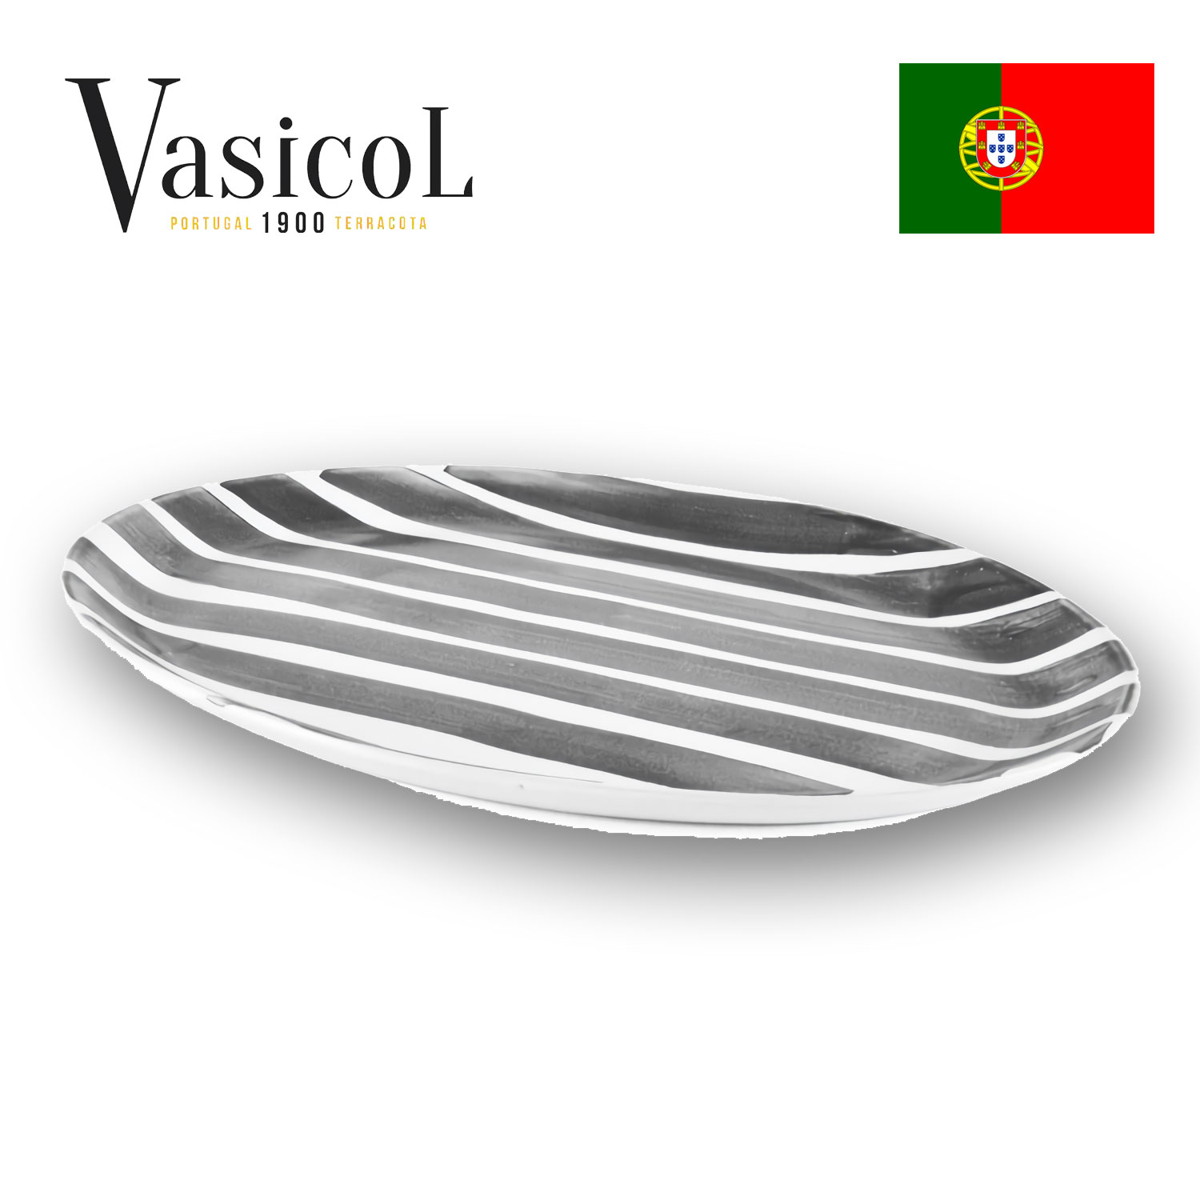 MARIA スモールオーバルトレイ ラージストライプ 皿 食器 ポルトガル製 テラコッタ 陶器